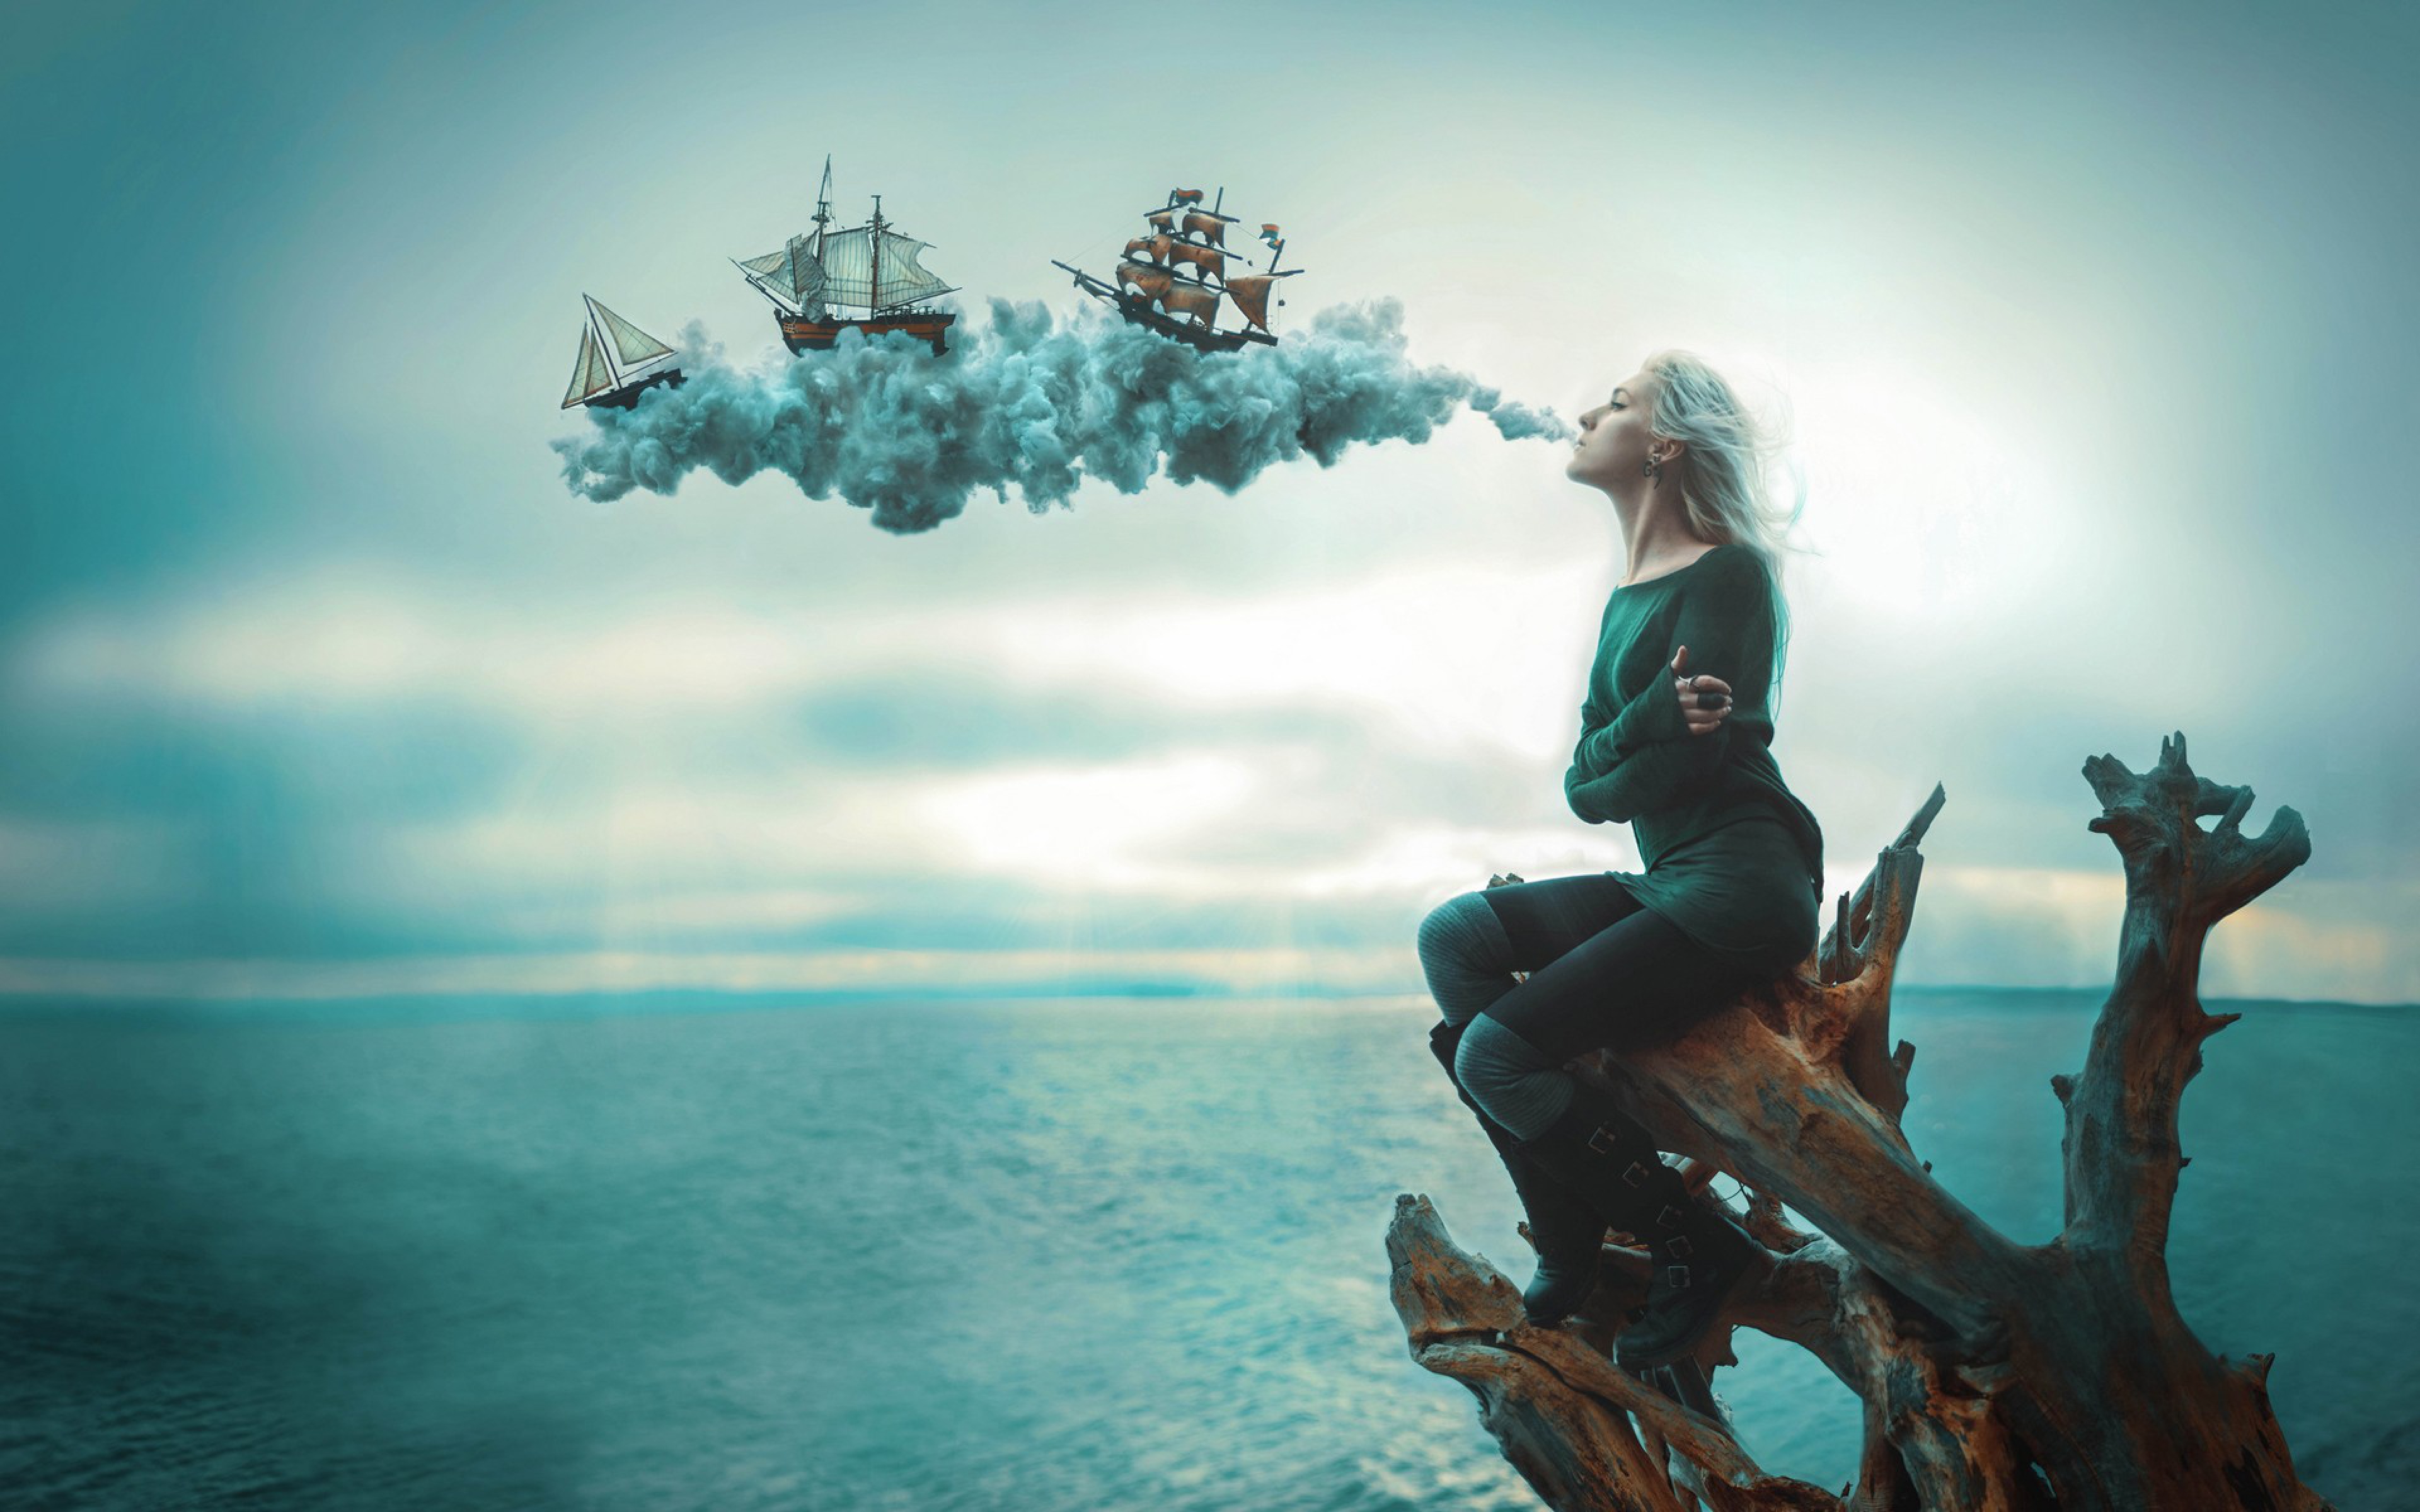 World of imagination. Девушка на корабле. Девушка-море. Фотосессия в стиле фантастика. Фантастическое море.